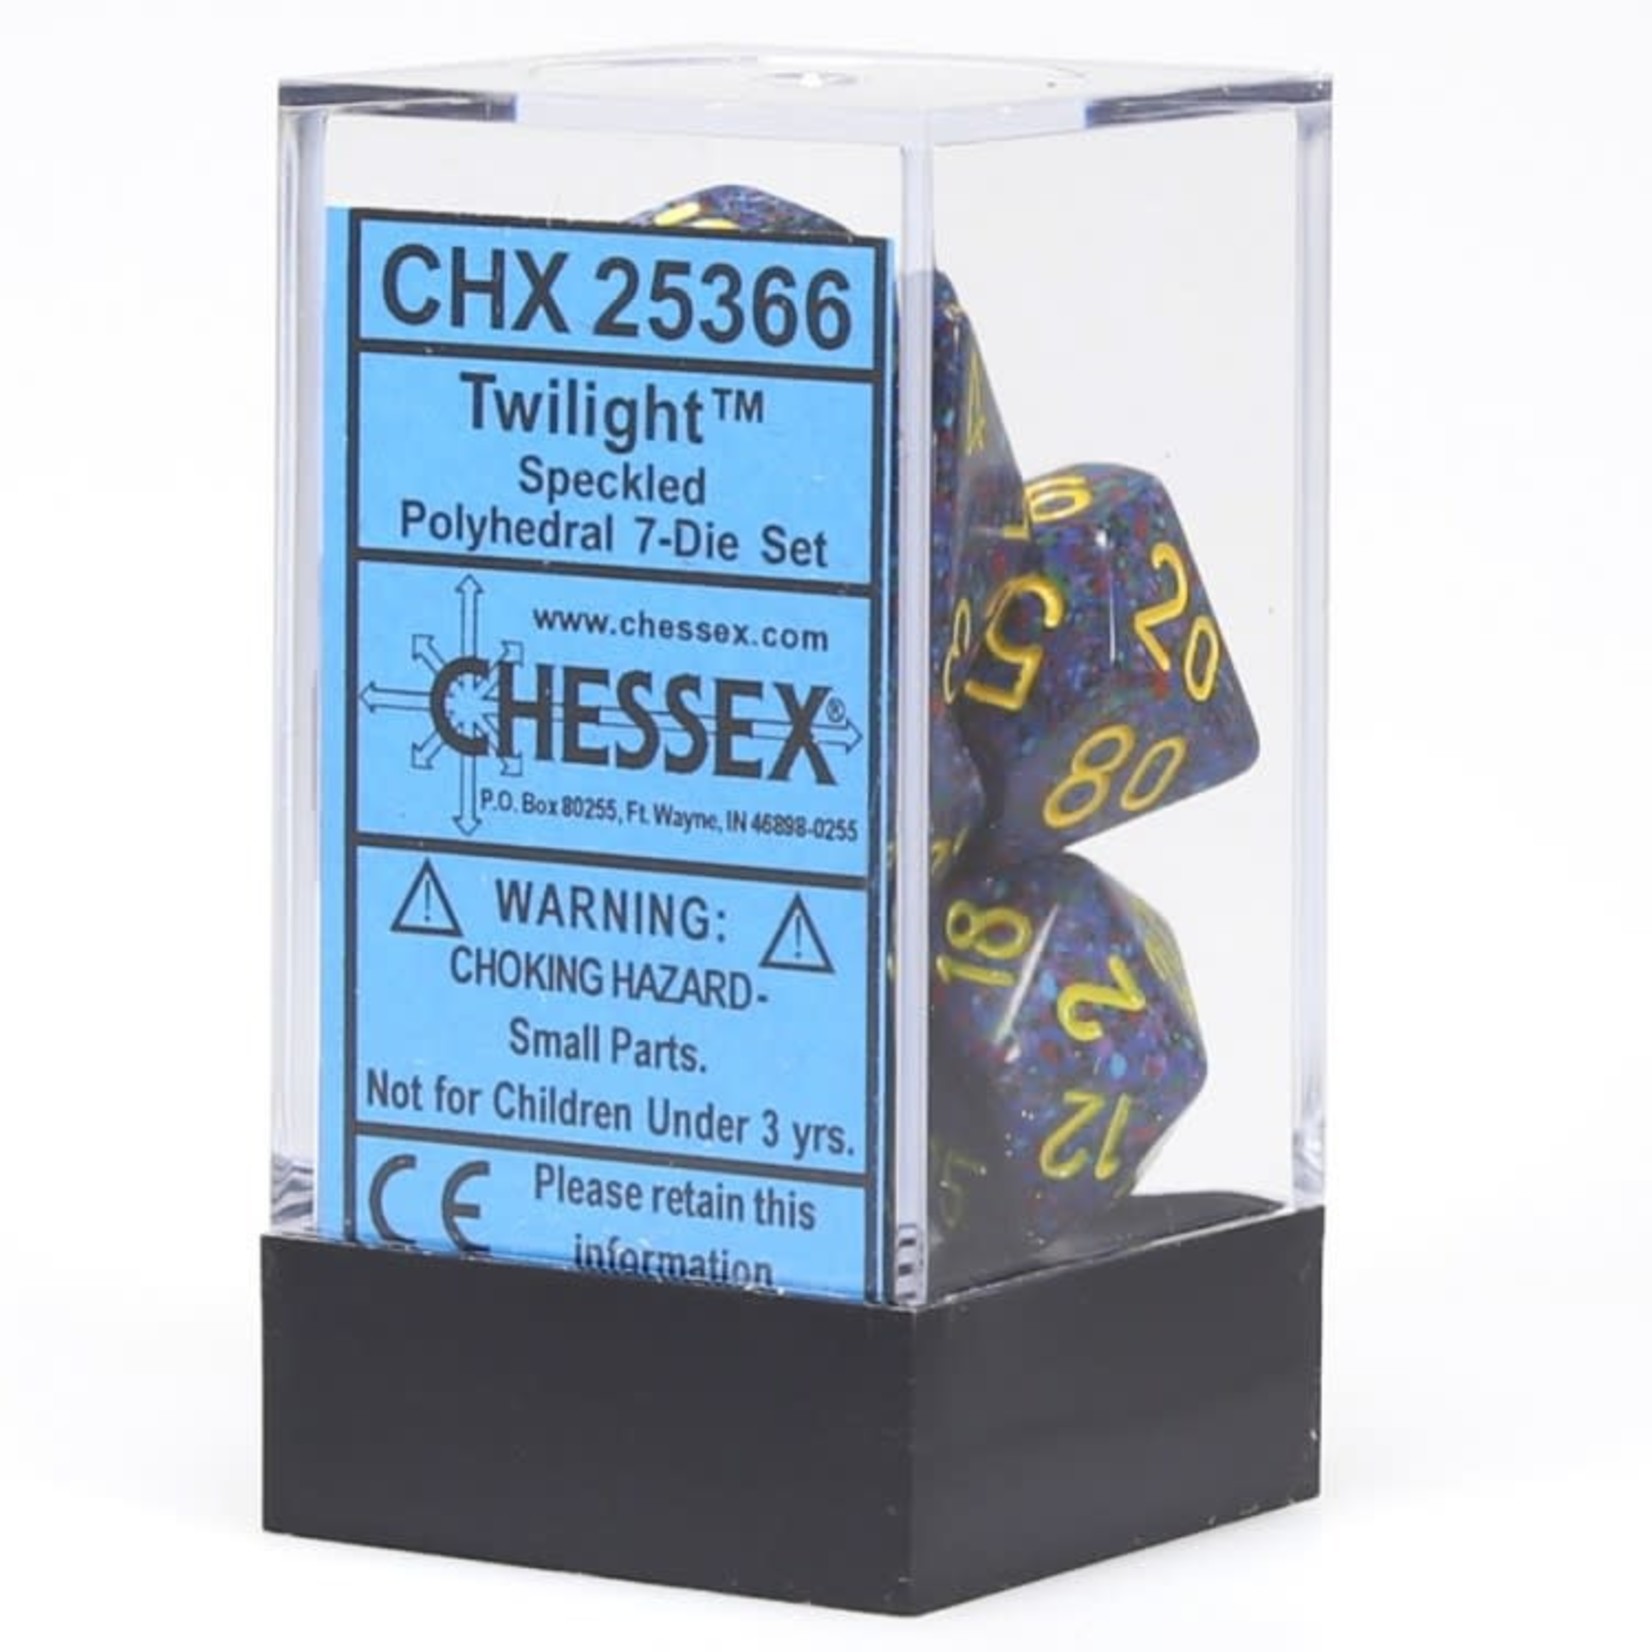 Chessex Chessex Speckled Twilight Polyhedral 7 die set